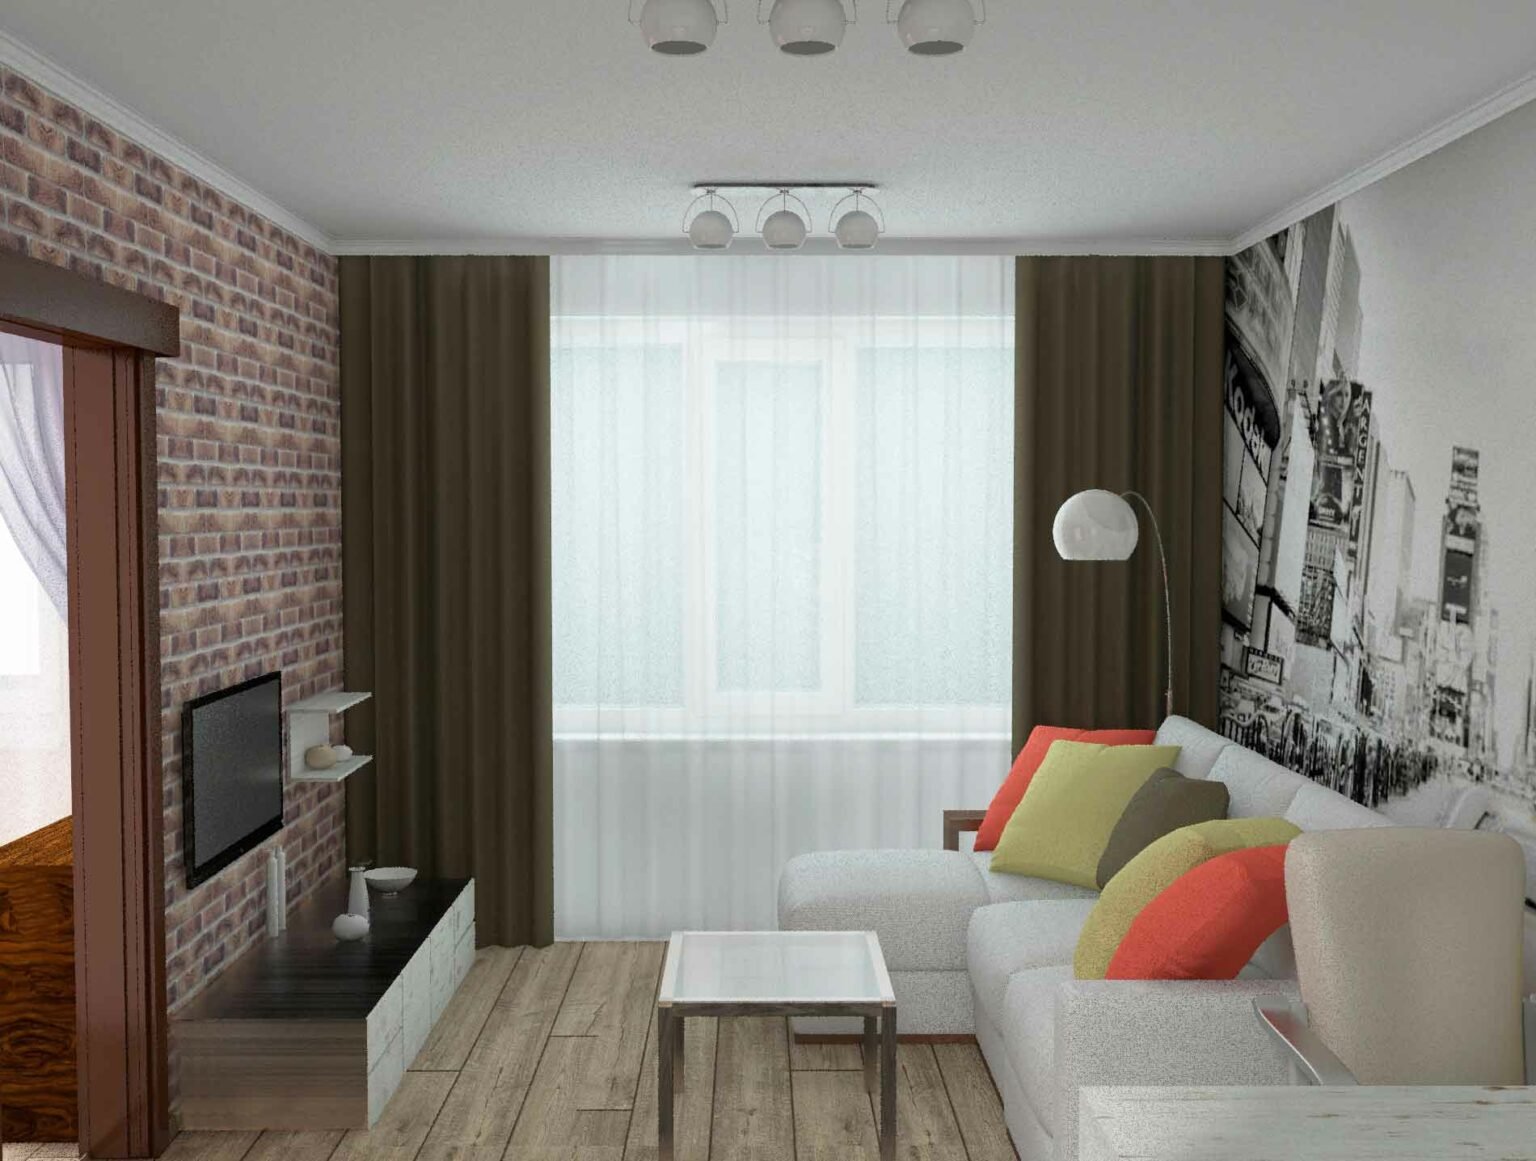 Дизайн интерьера гостиной в хрущёвке, идеи, в том числе вариант оформления зала с балконом 2 х комнатной квартиры + фото